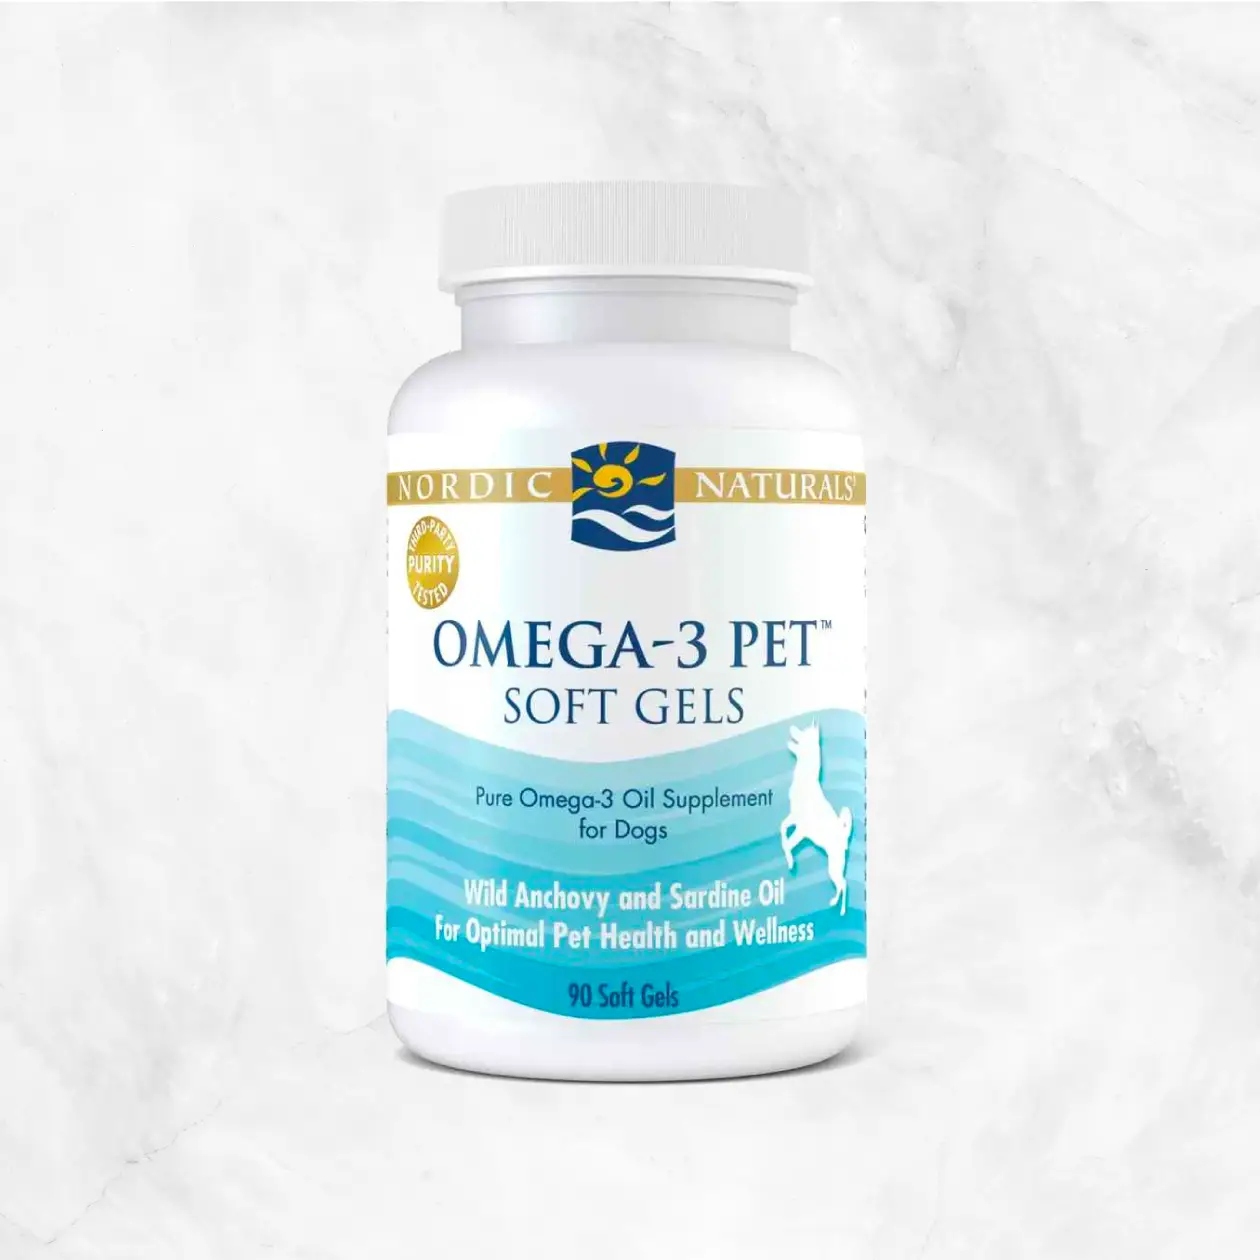 Omega-3 Pet Soft Gels Supplement - Unflavored